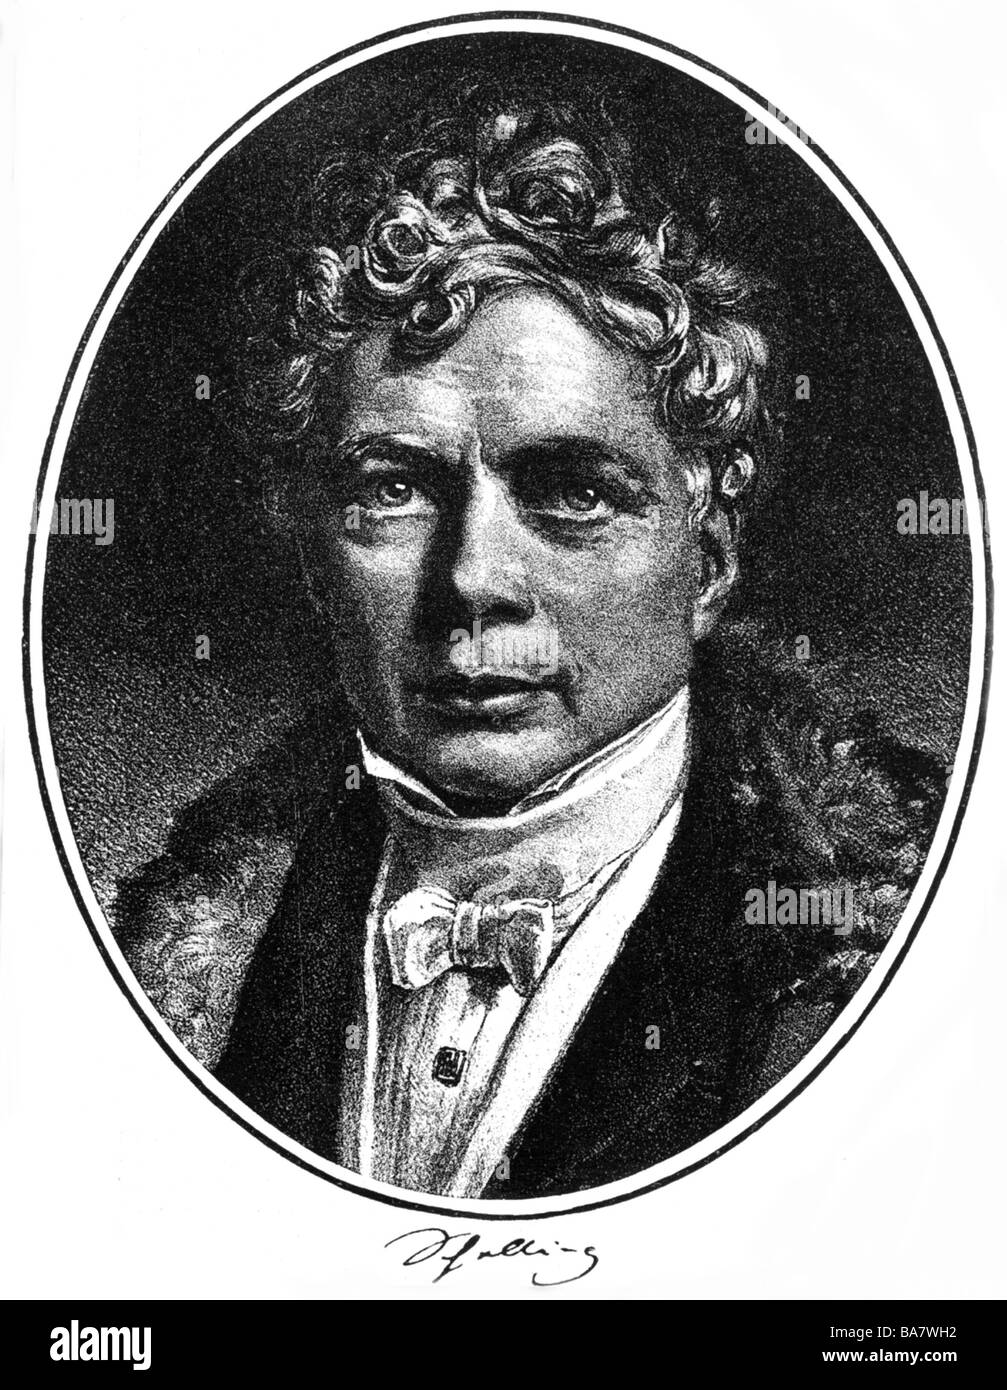 Schelling, Friedrich Wilhelm Joseph von, 27.1.1775 - 20.8.1854, German philosopher, portrait, lithograph by C. Mittag, 19th century, after painting by Josef Stieler, 1835, Stock Photo